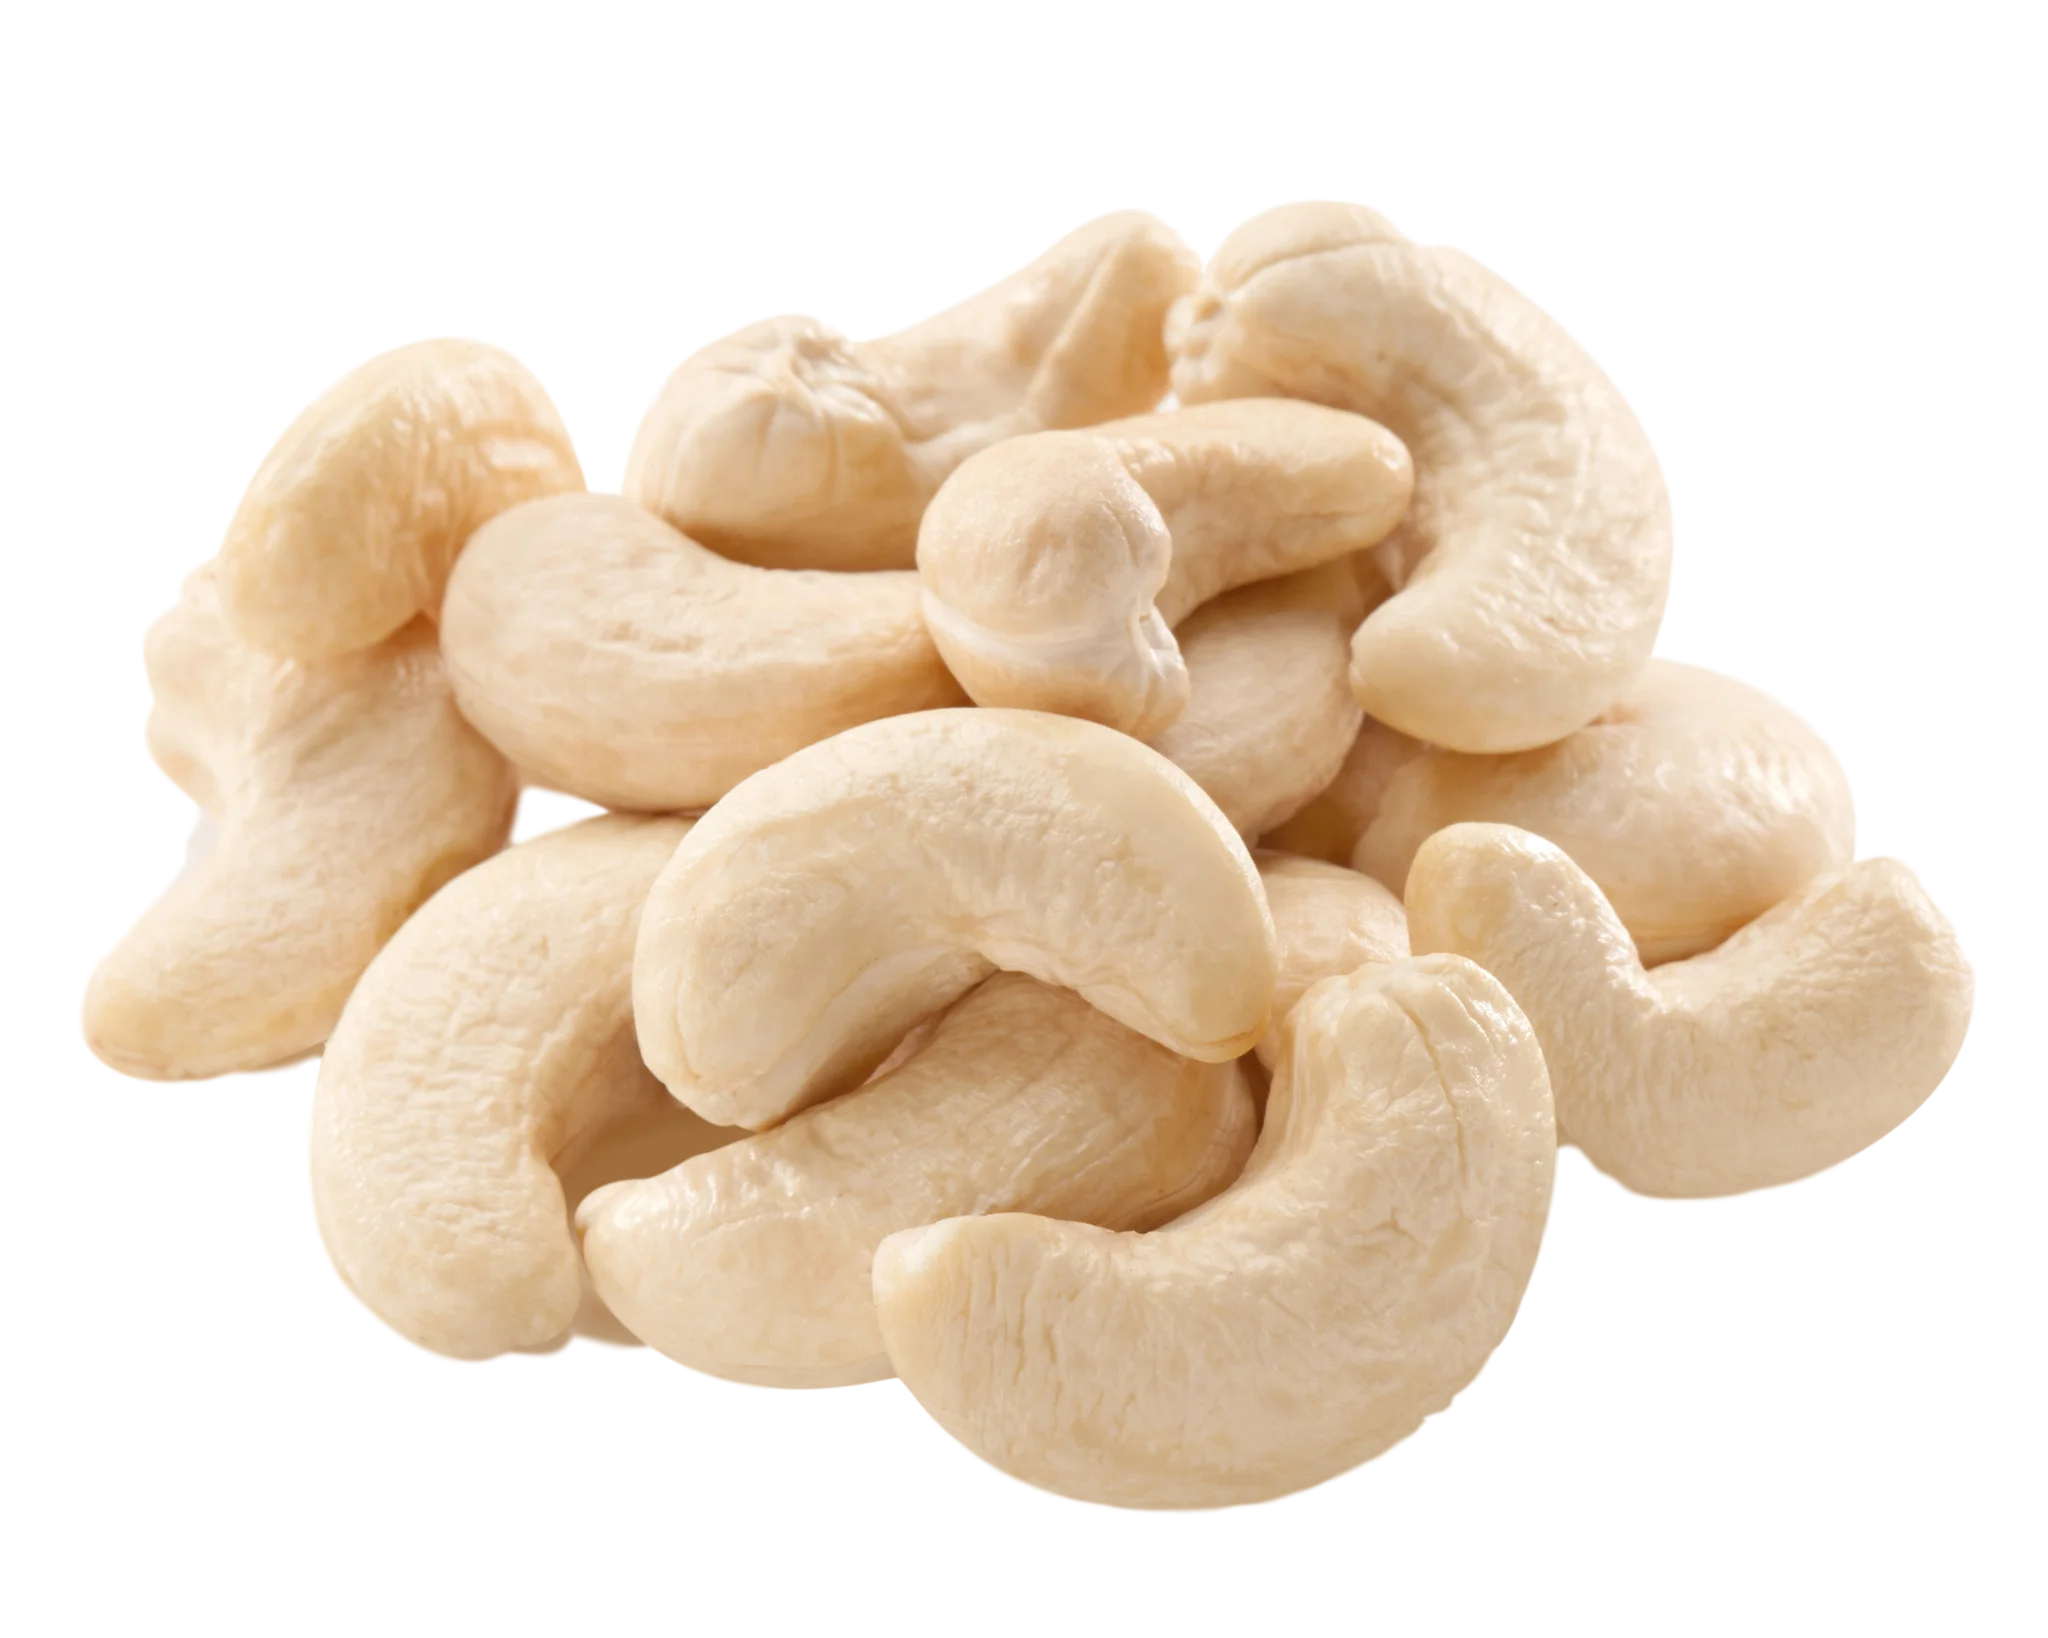 Купить ядро ореха кешью во Вьетнаме WW240, хорошая цена, белый цвет (WHATSA...